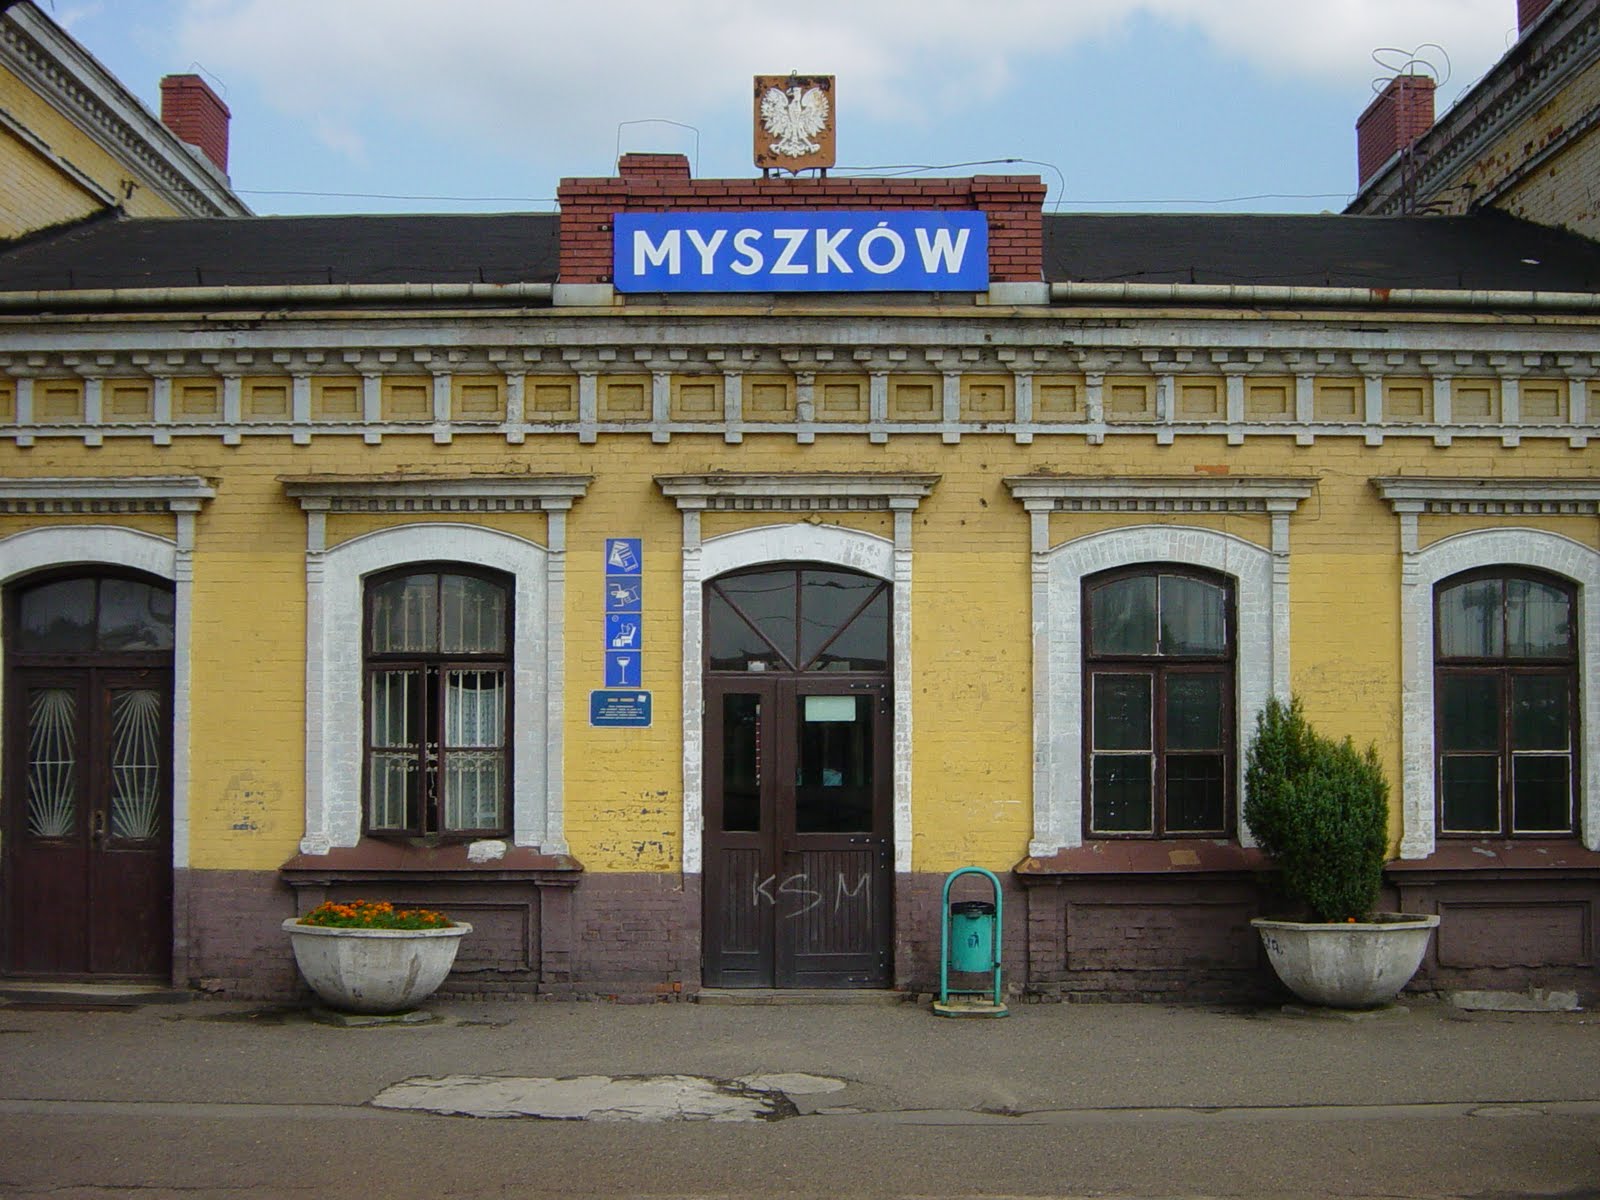 Railway Stations Poland Myszkow Myszk w Dworzec Kolejowy 